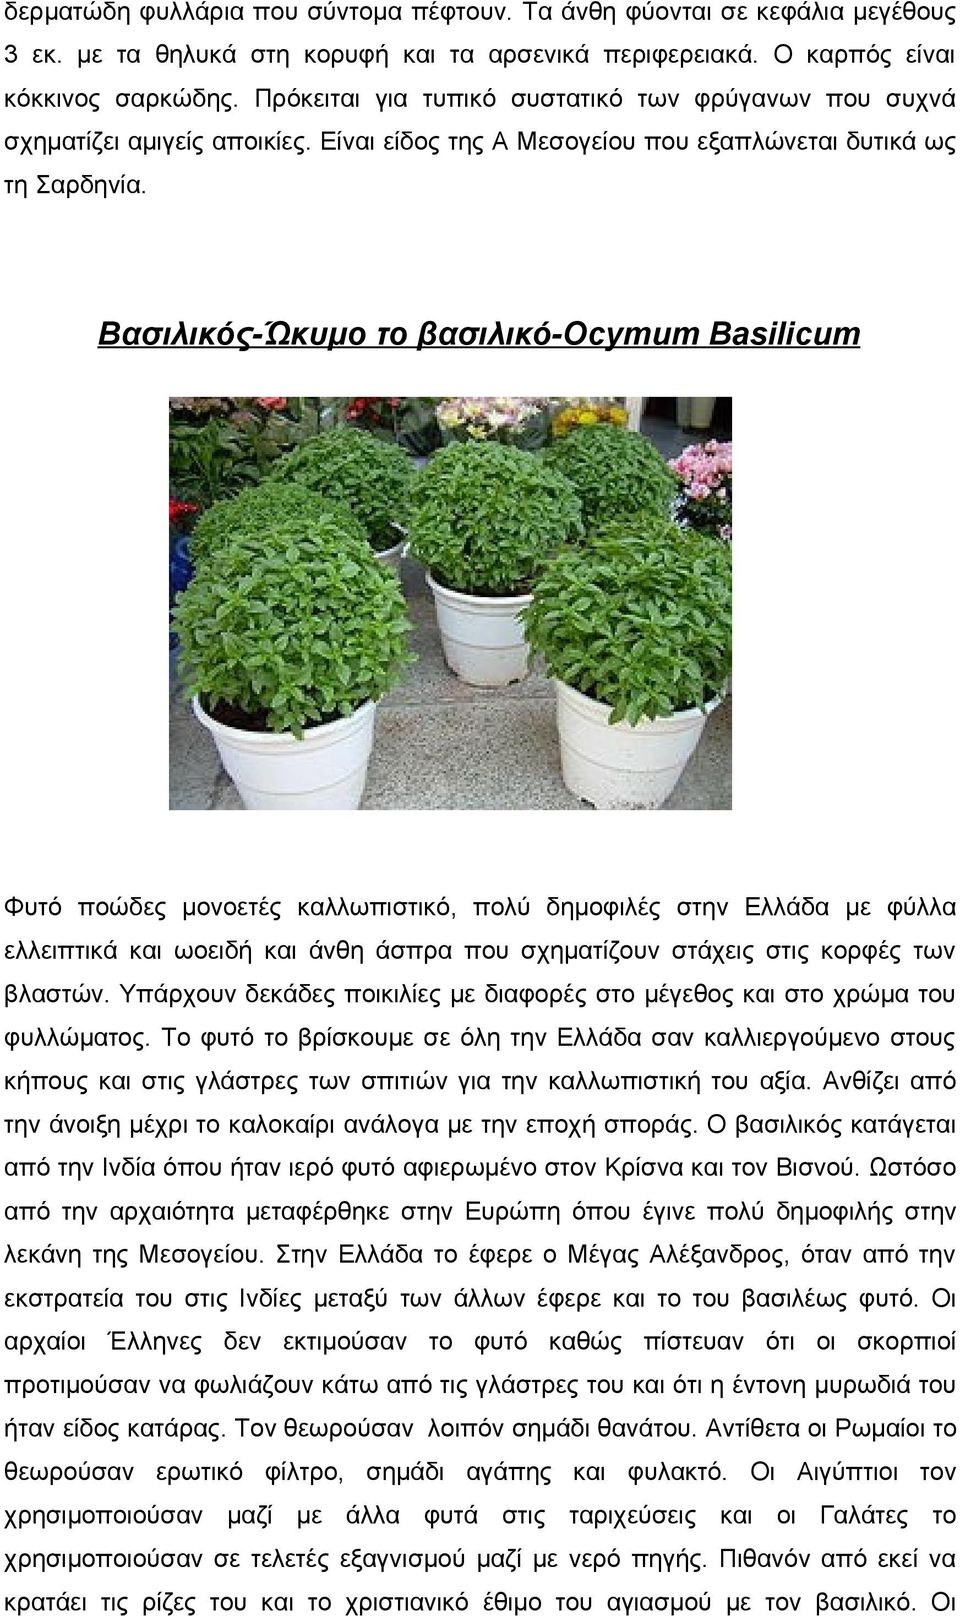 Βασιλικός-Ώκυμο το βασιλικό-ocymum Basilicum Φυτό ποώδες μονοετές καλλωπιστικό, πολύ δημοφιλές στην Ελλάδα με φύλλα ελλειπτικά και ωοειδή και άνθη άσπρα που σχηματίζουν στάχεις στις κορφές των